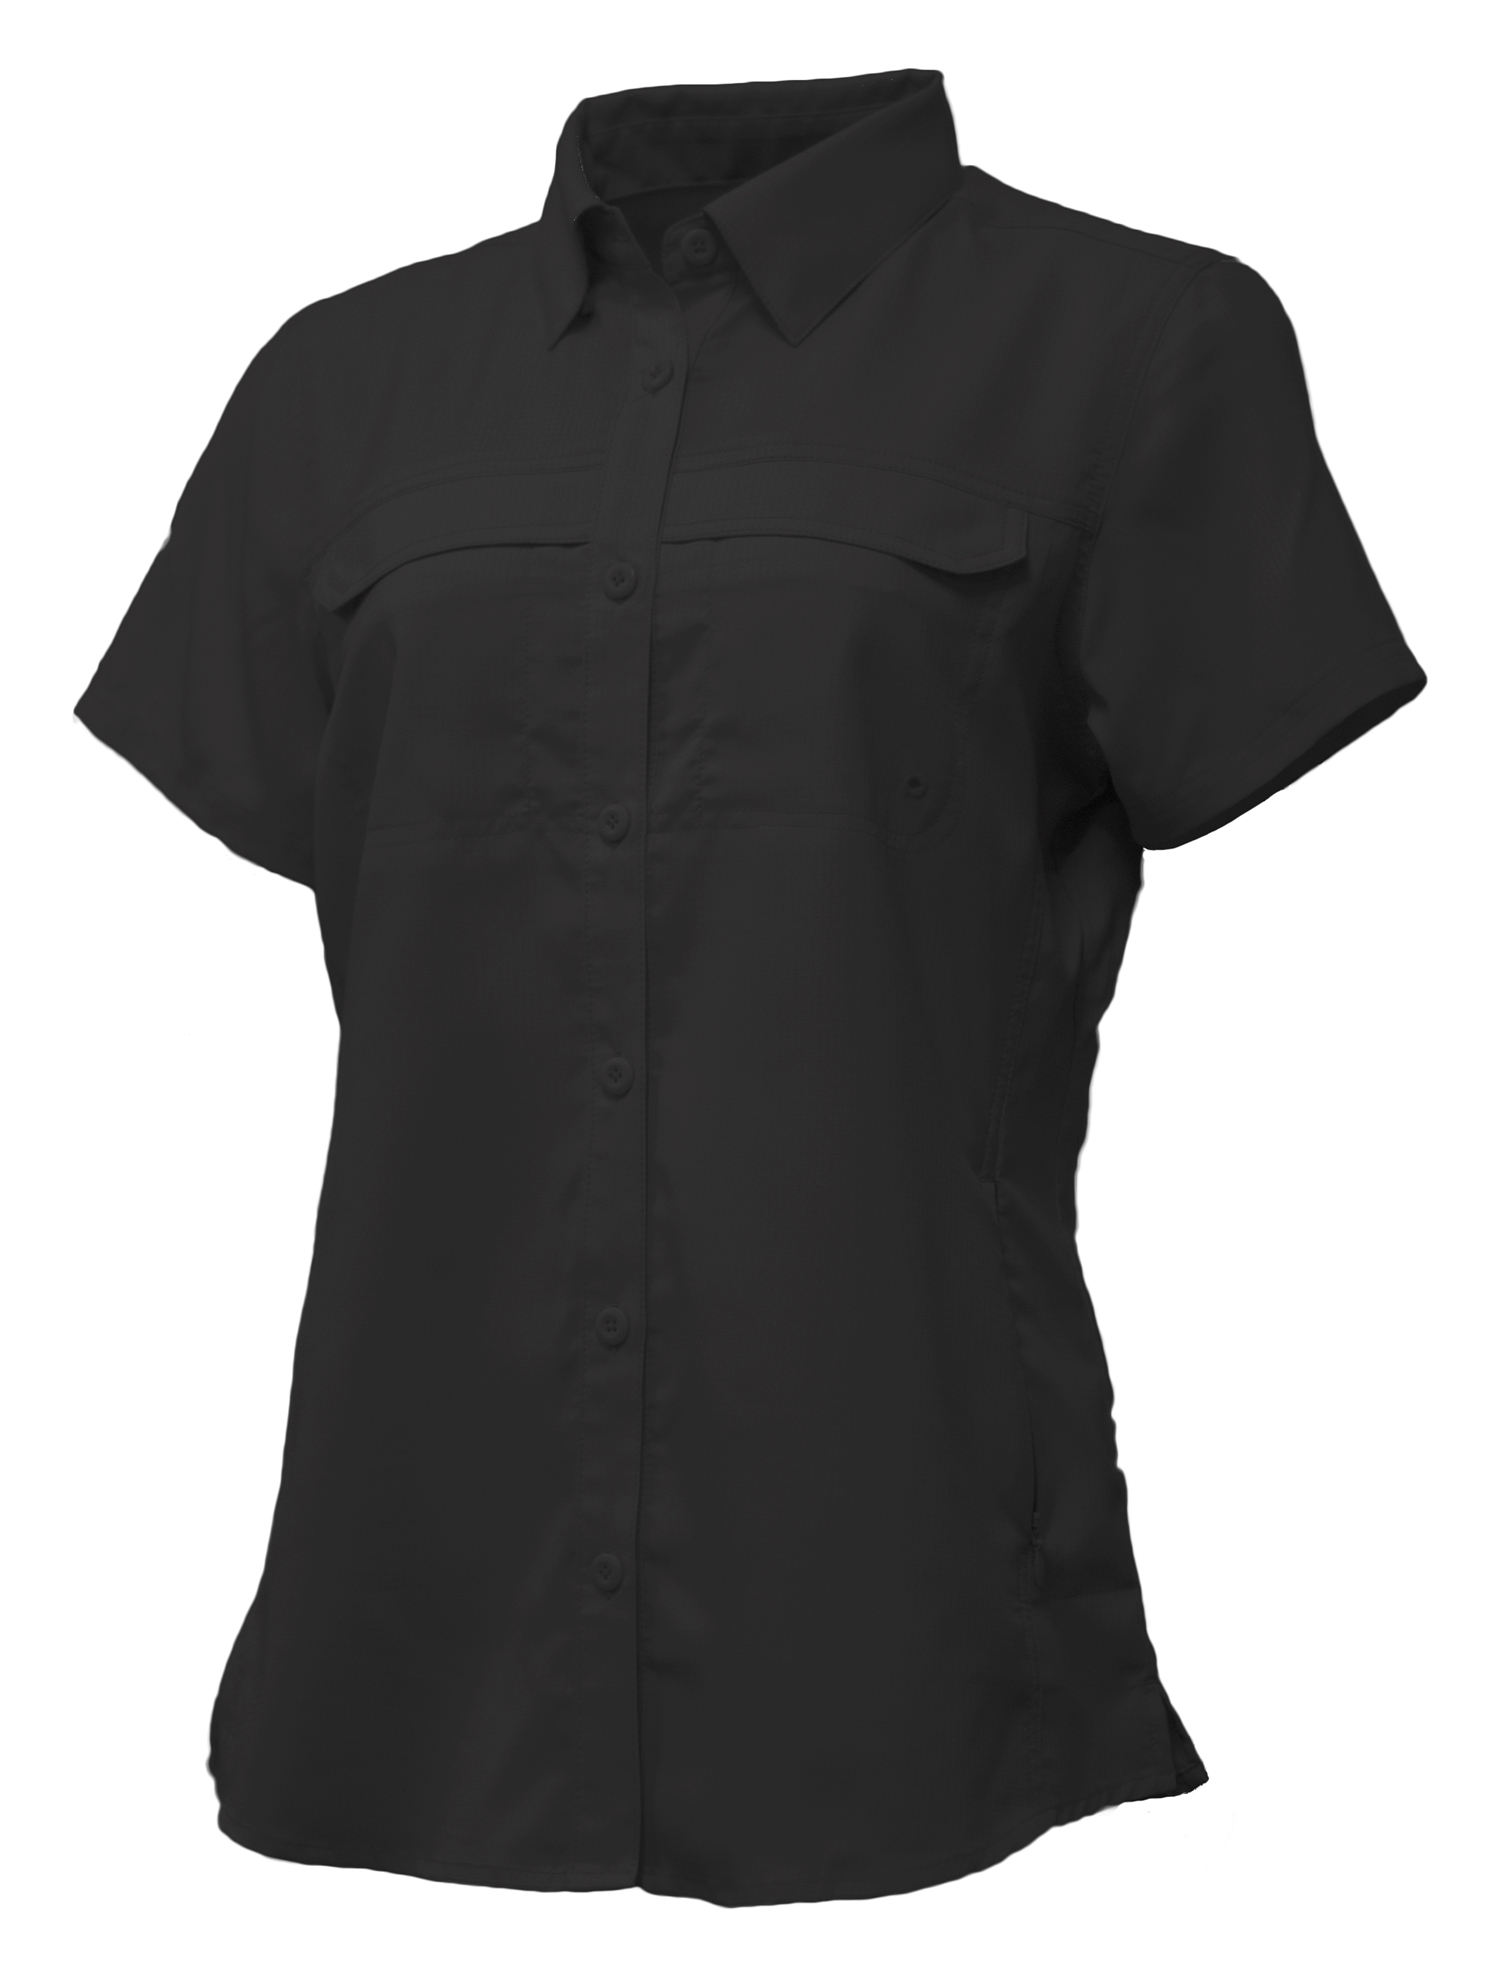 FISHERBABE - Black - Fishing Shirts For Women – JOE'S Fishing Shirts